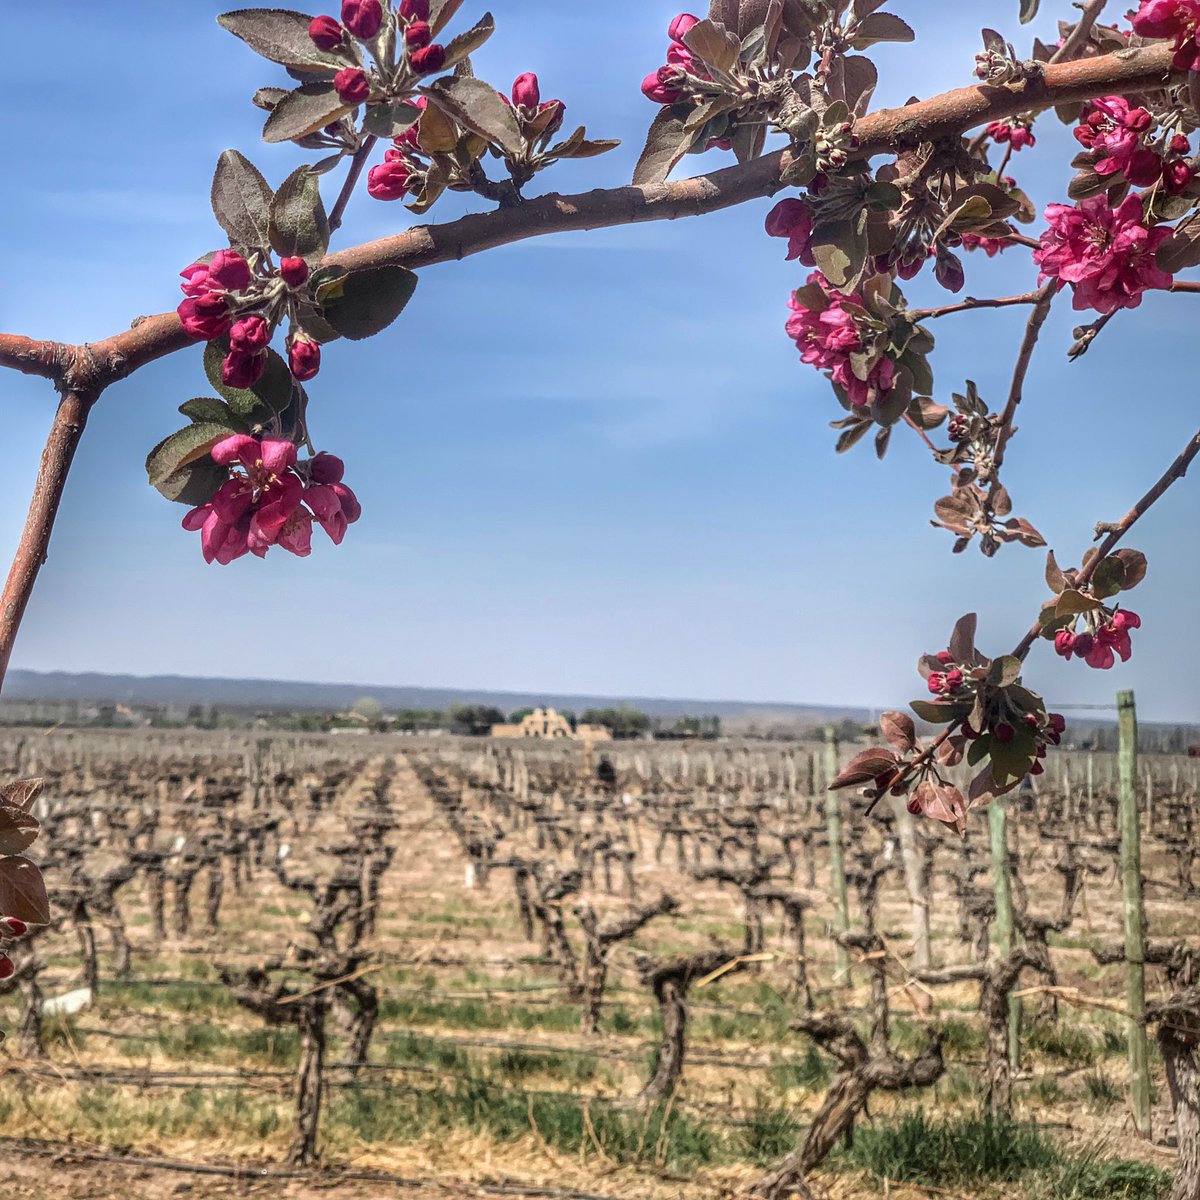 Viñedo La Pirámide en flor 🌱🌸.
#winelover #Mendoza #spring #CatenaZapata